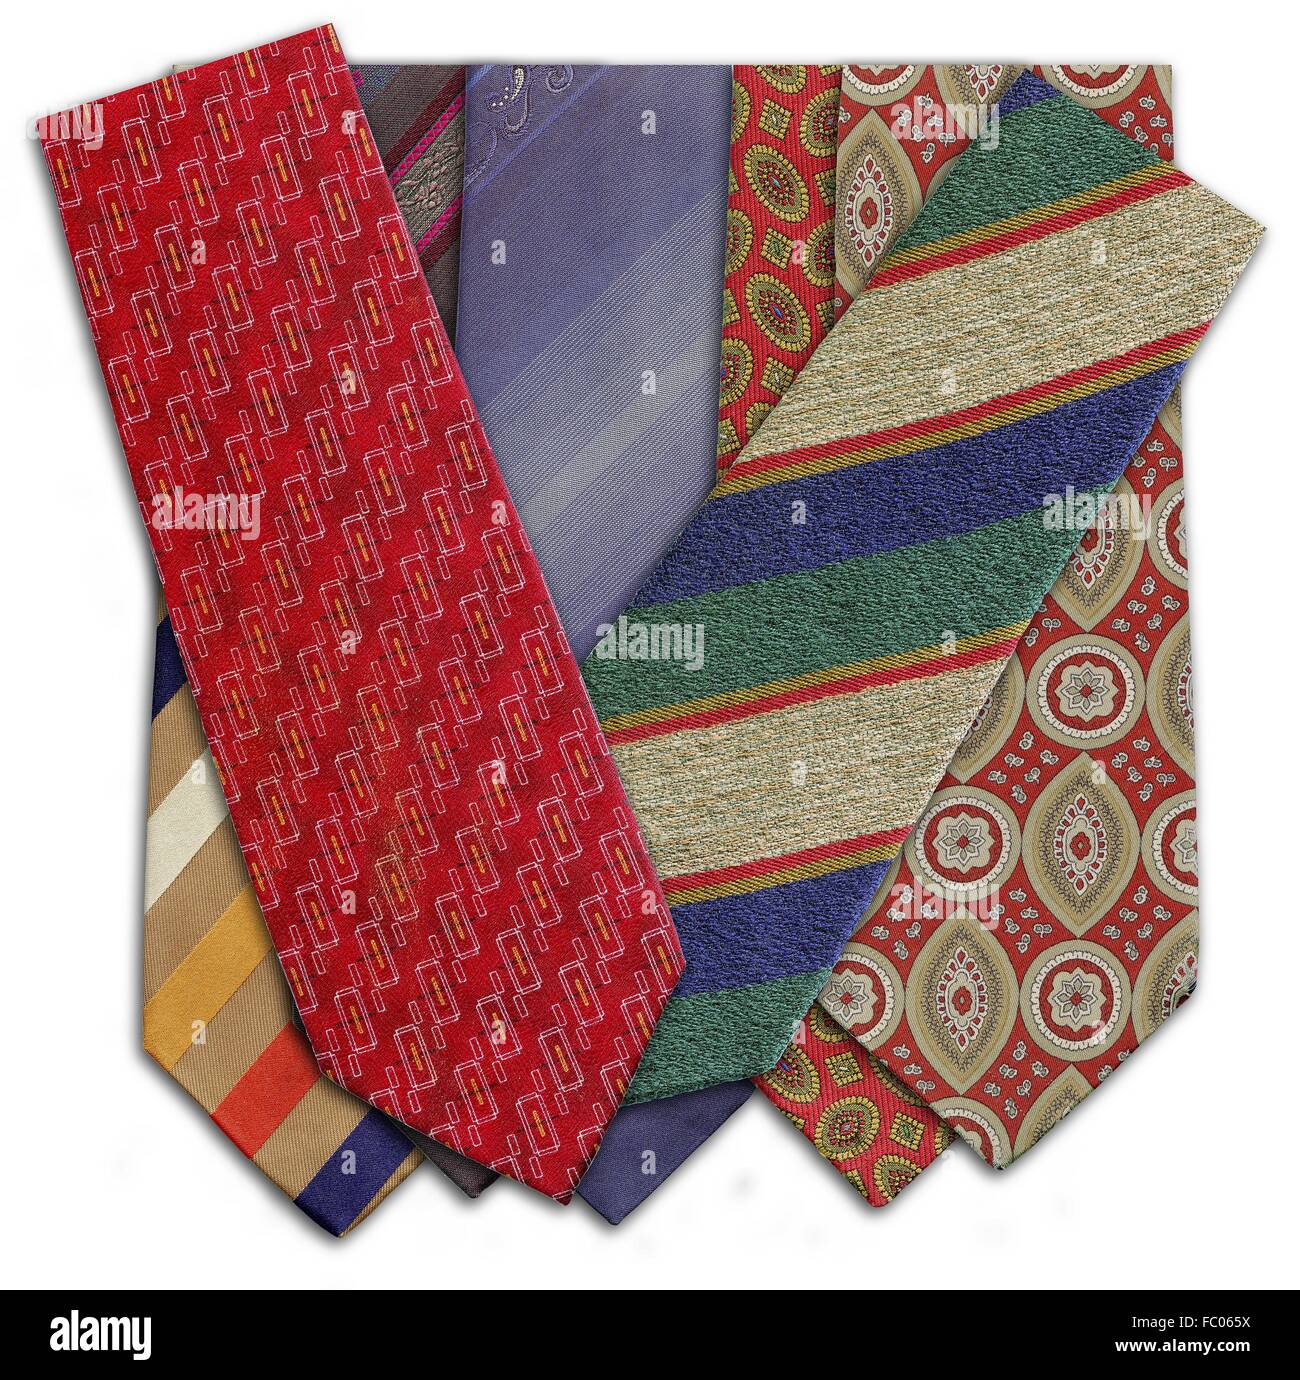 Cravates Banque d'images détourées - Alamy